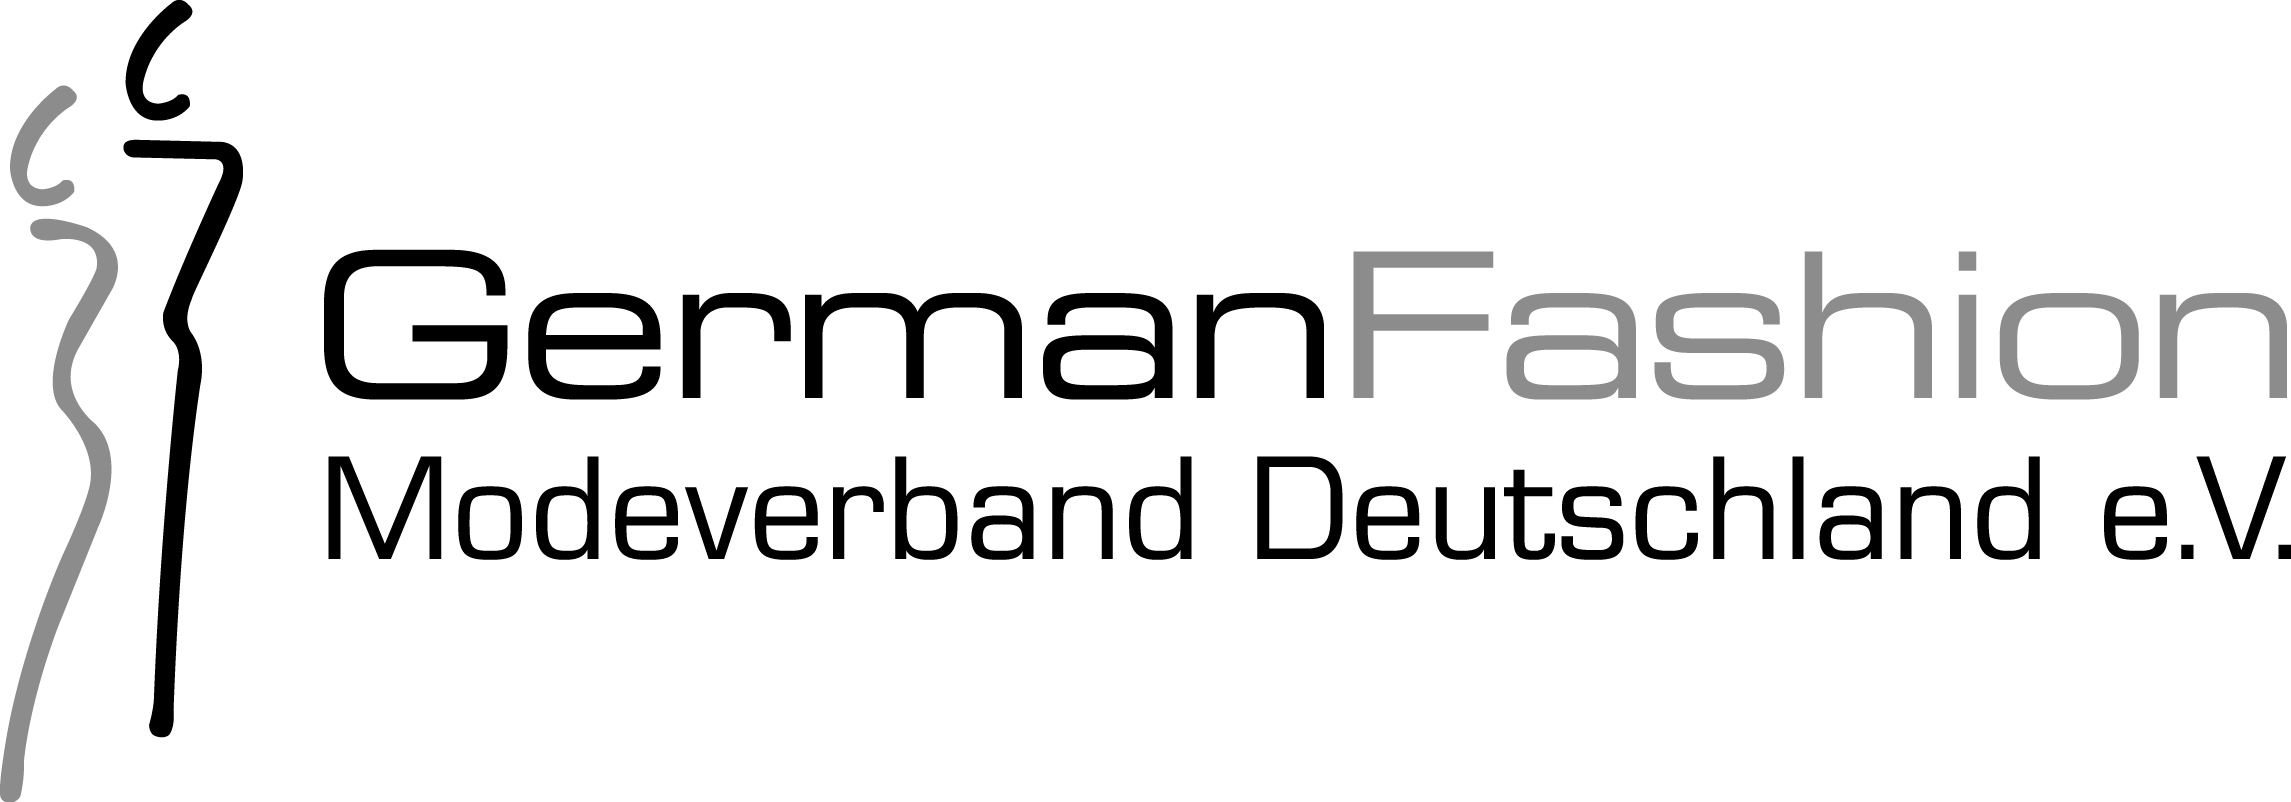 GermanFashionModeverband Logo